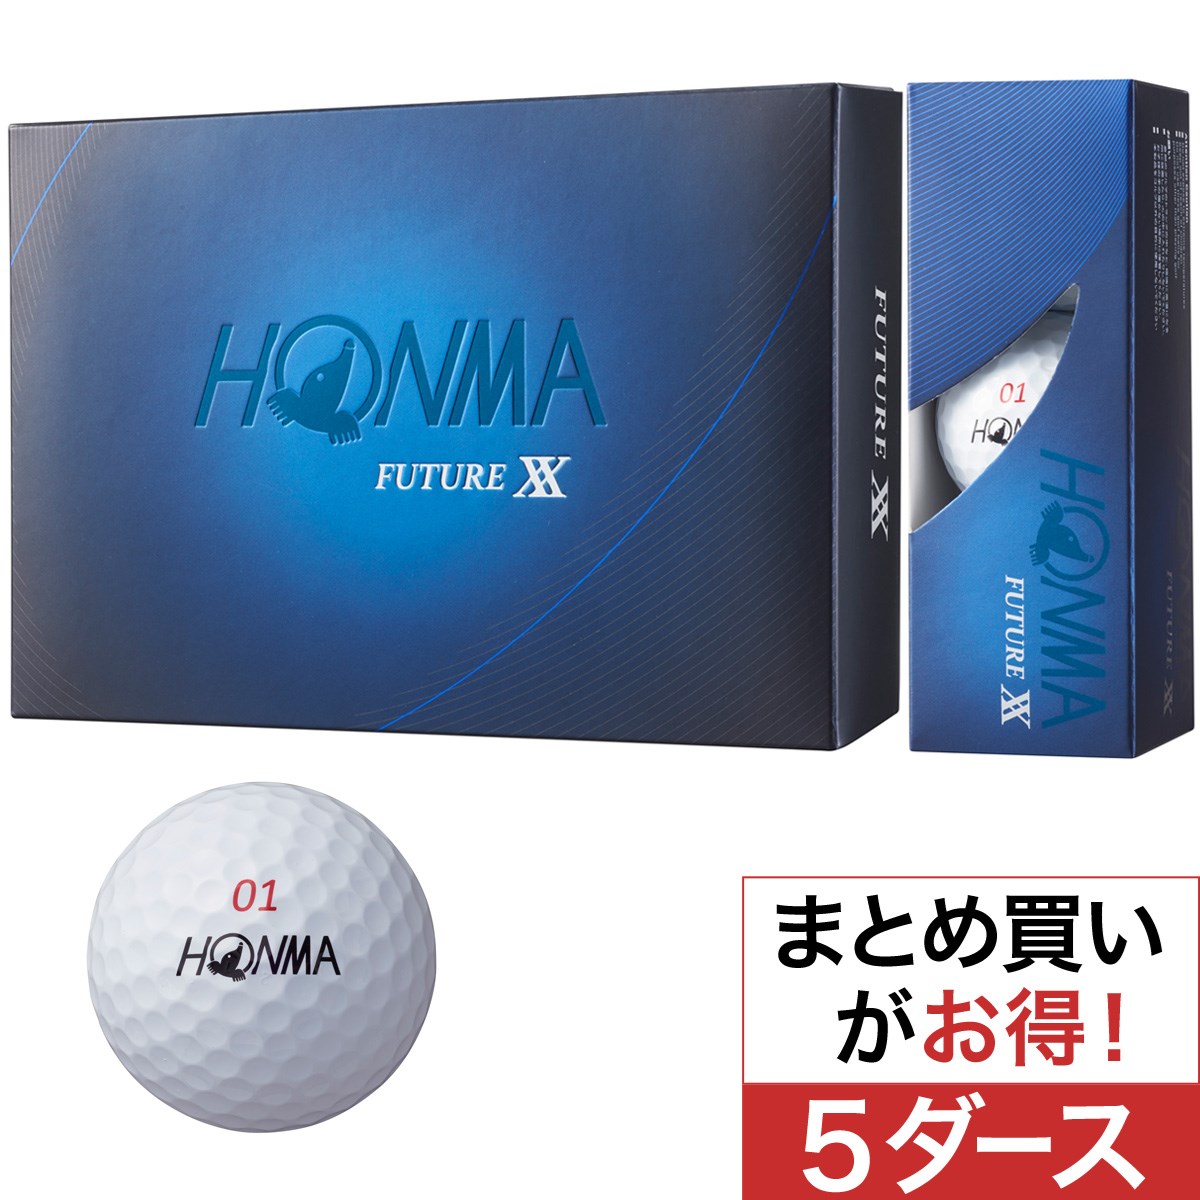 本間ゴルフ(HONMA GOLF) FUTURE XX ボール 5ダースセット 